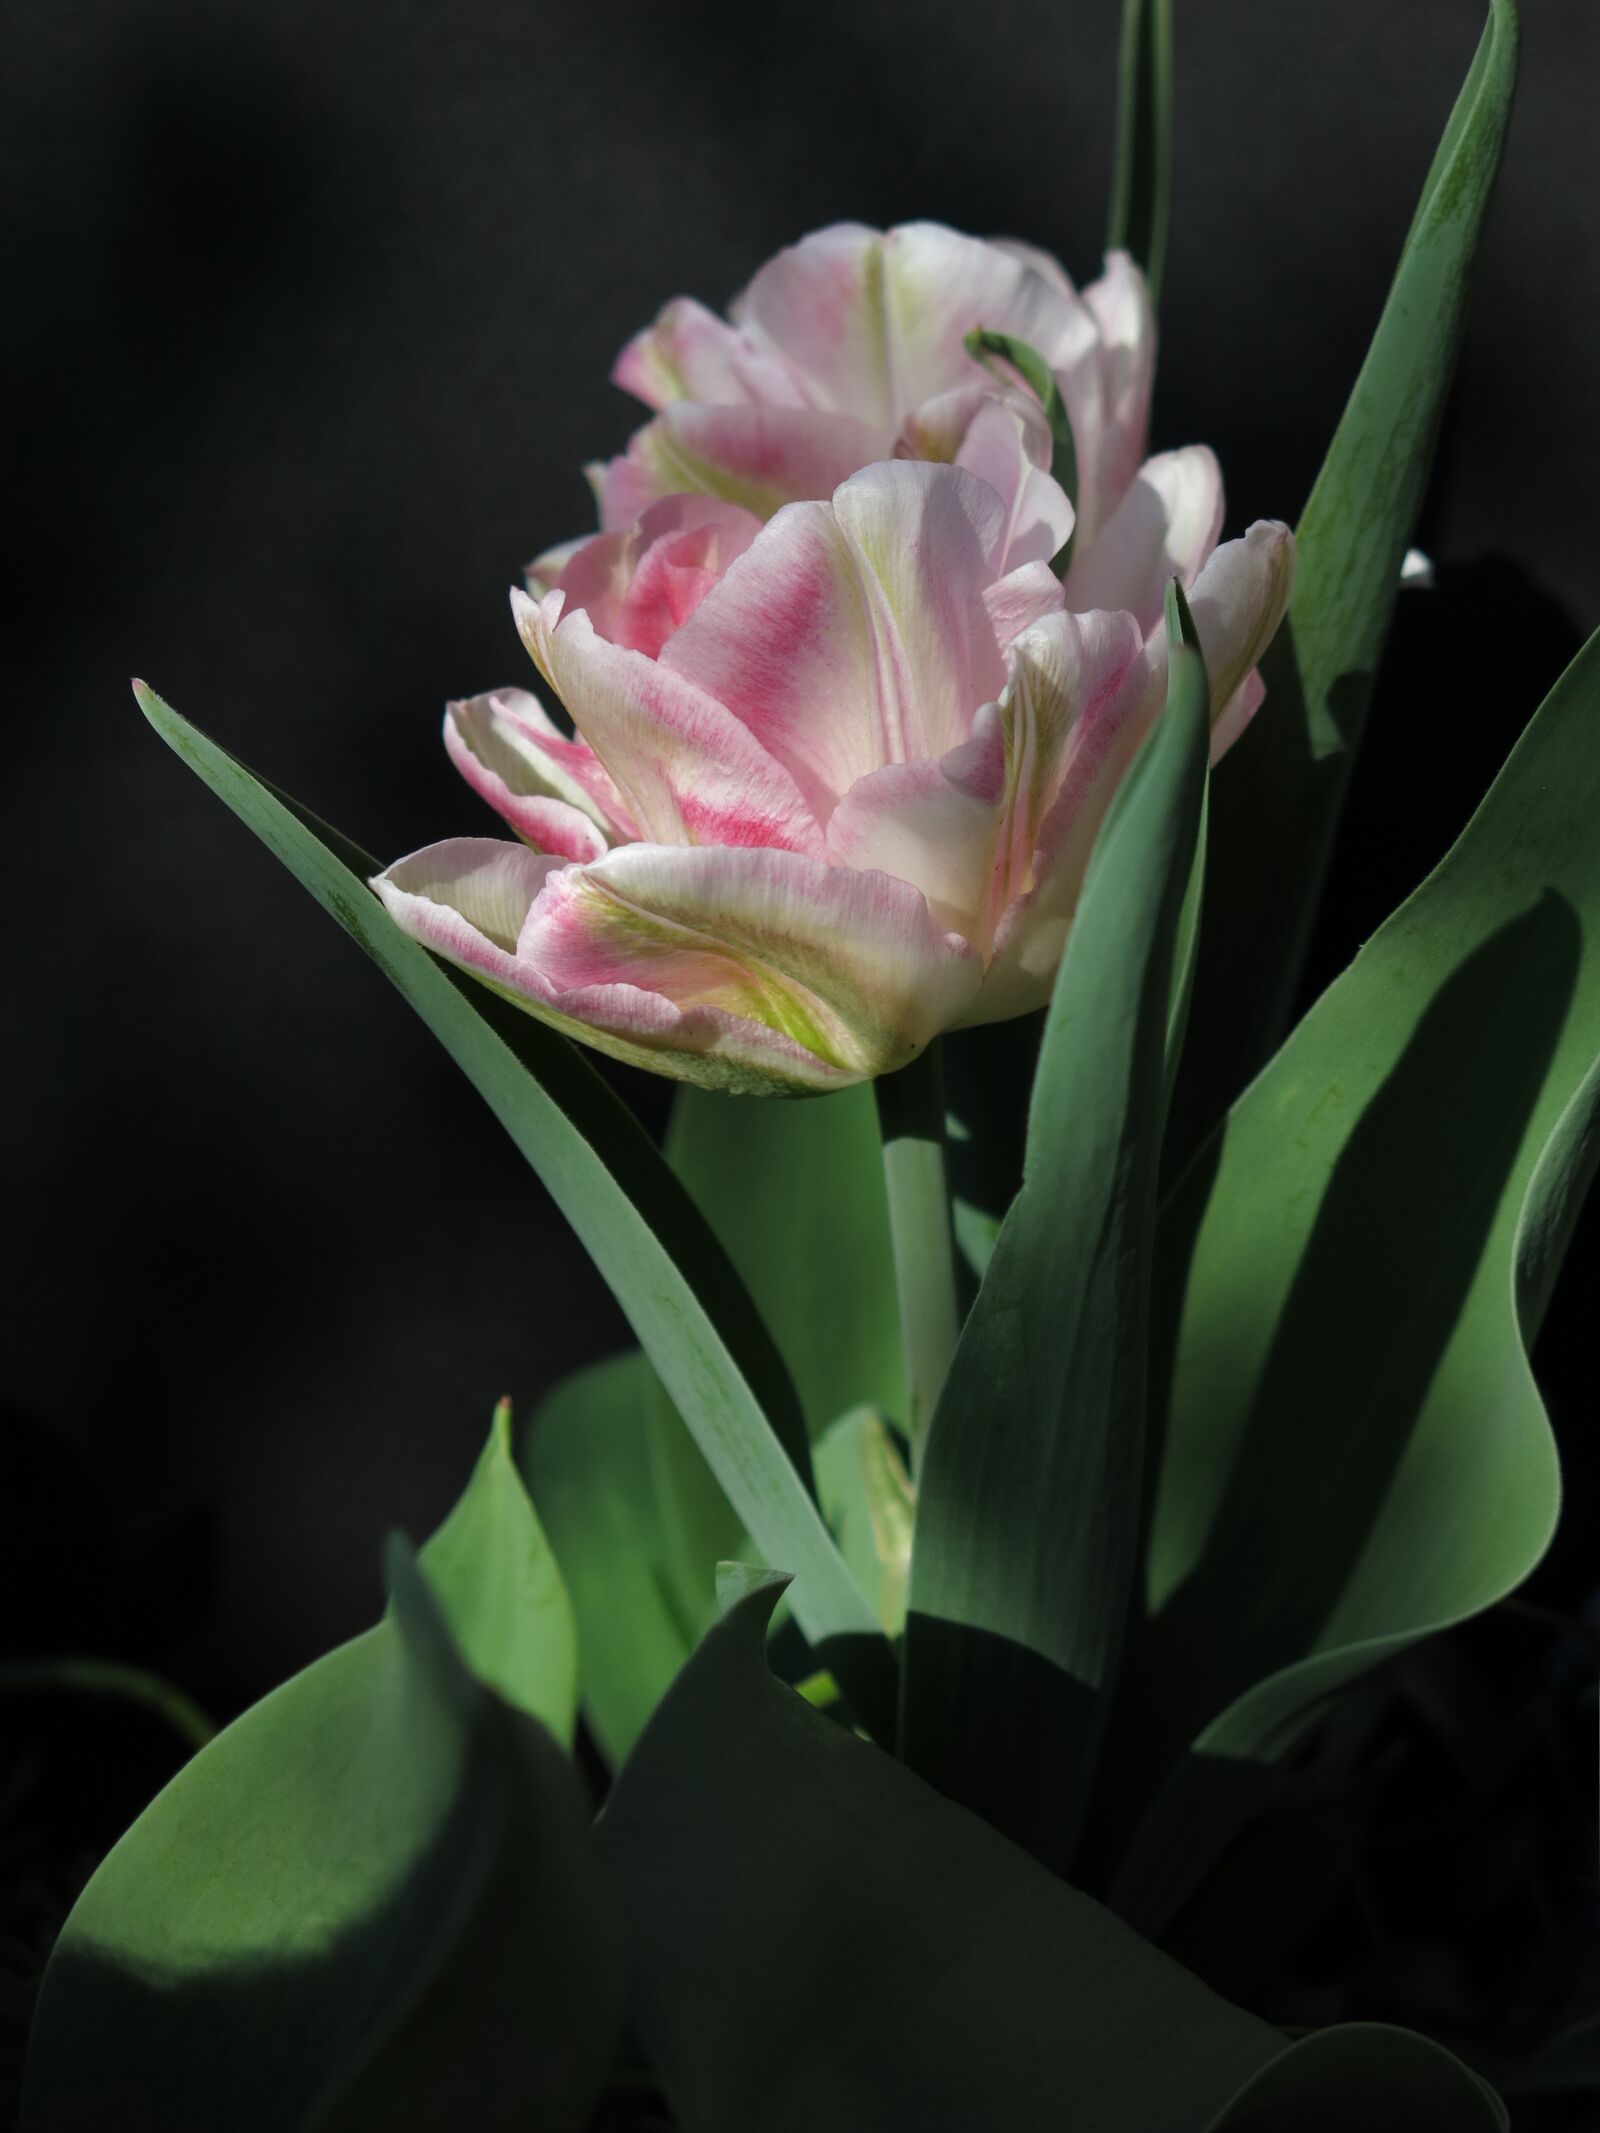 Canon PowerShot G15 sample photo. Tulip, viridiflora tulip, chinatown photography